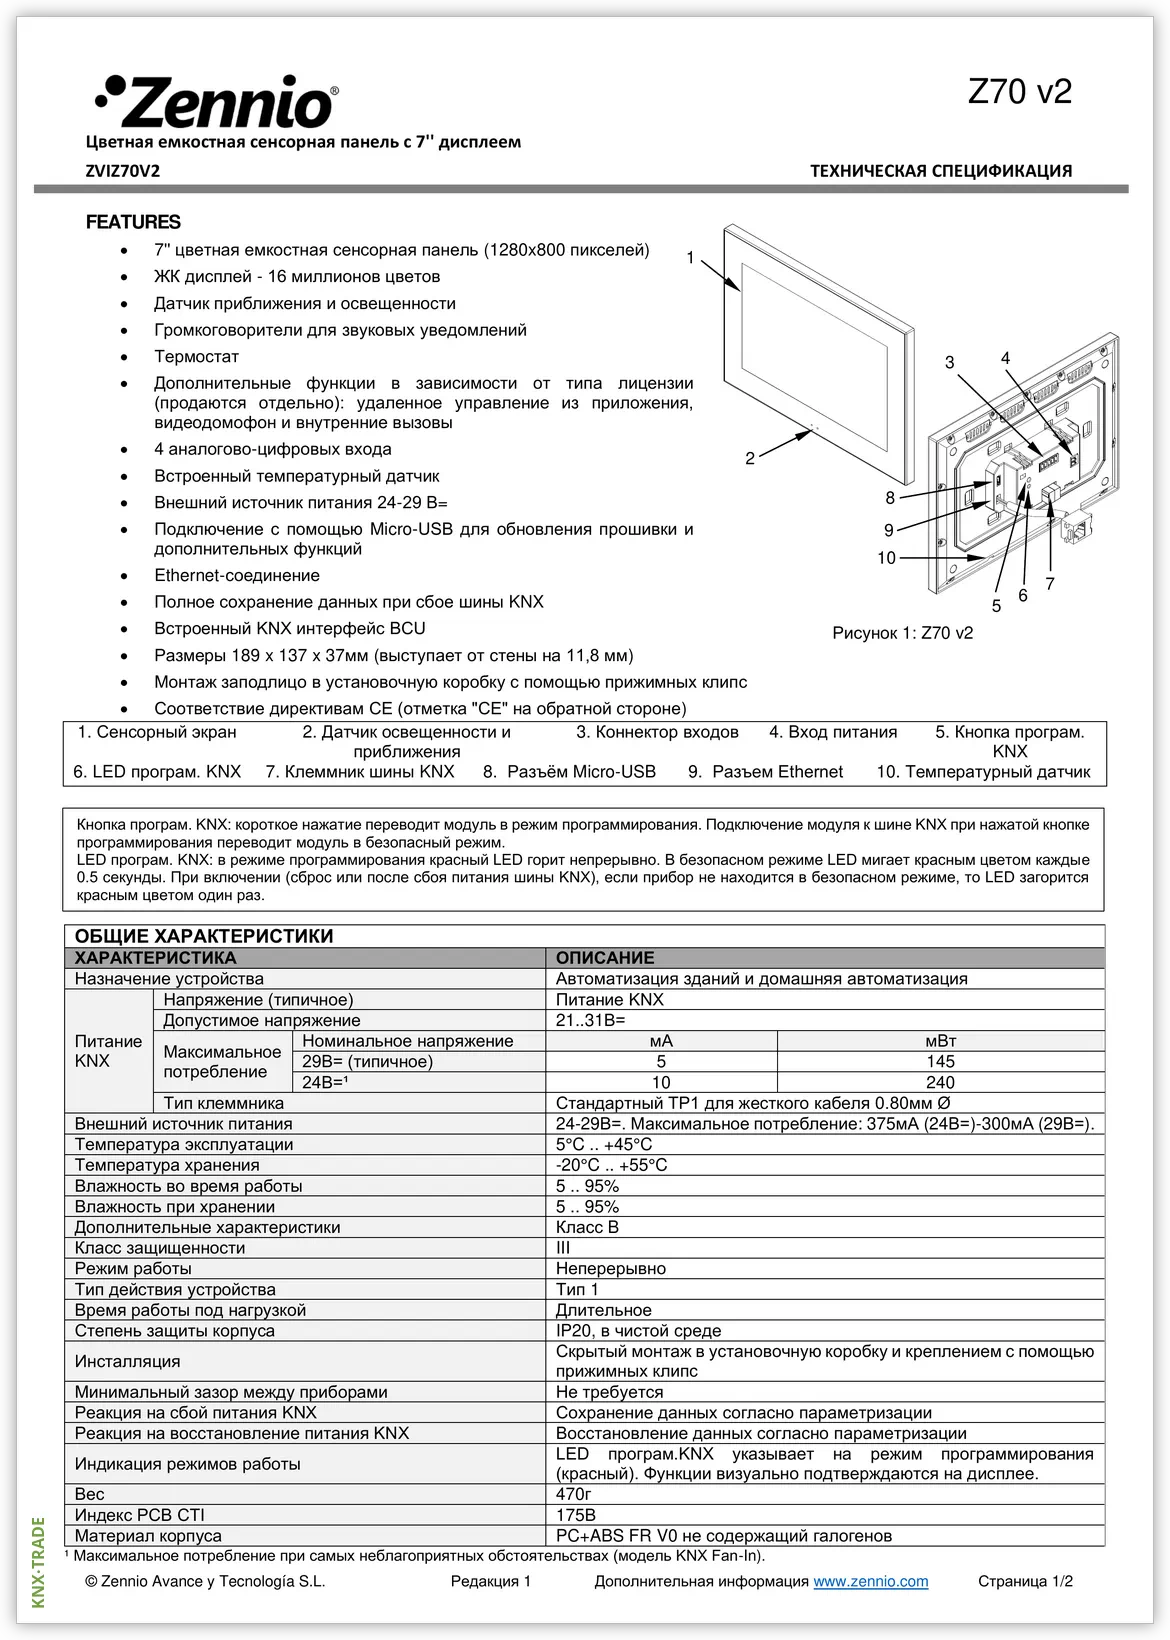 Datasheet (1) Zennio [ZVIZ70V2] Z70 v2 / Панель сенсорная KNX, дисплей 7-дюймов